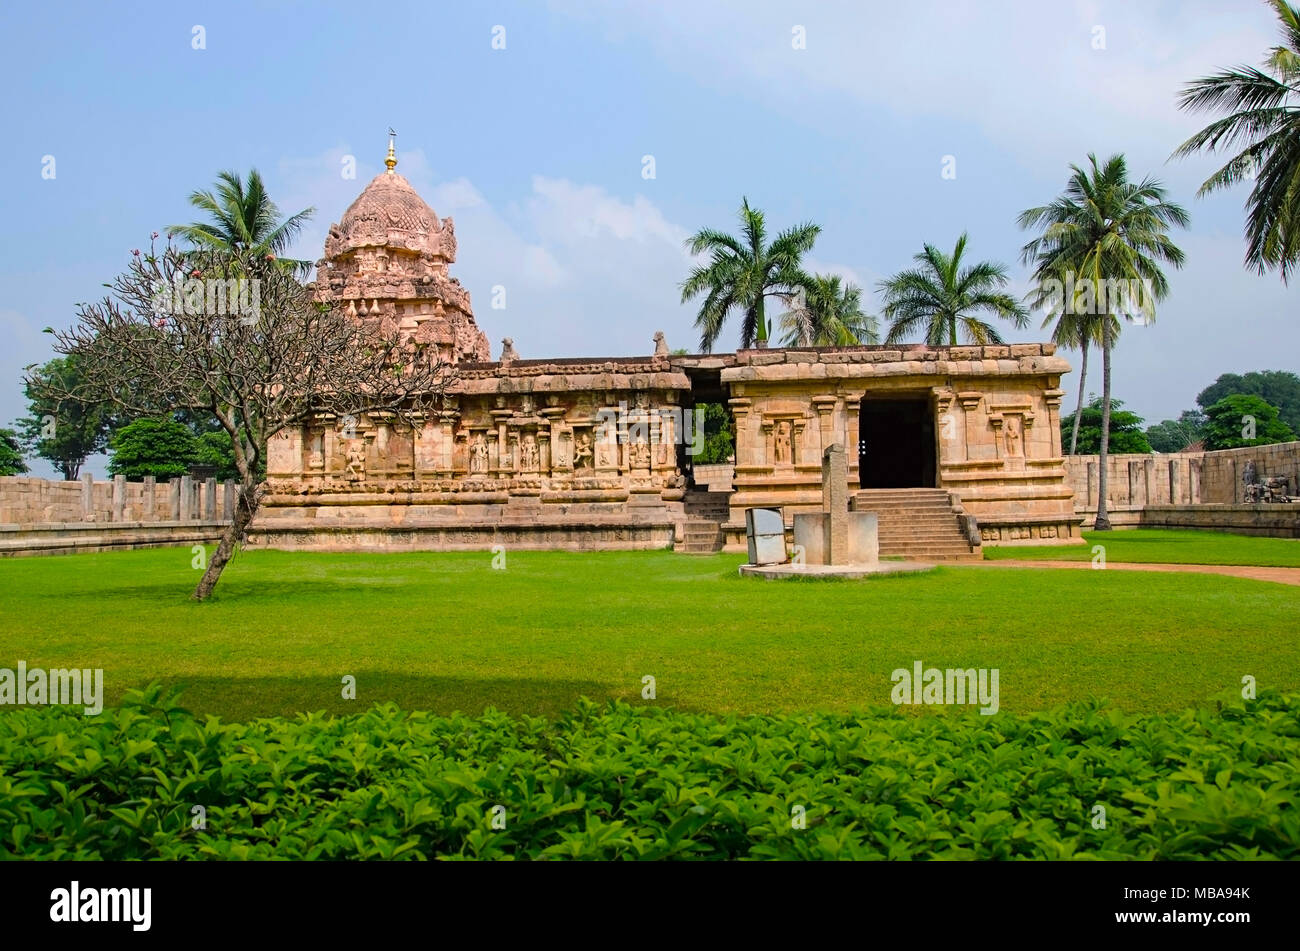 Äußere Ansicht der Gangaikondacholapuram Tempel. Thanjavur, Tamil Nadu, Indien. Shiva Tempel hat den größten Lingam in Südindien. Tt wurde Hauptstadt des Stockfoto